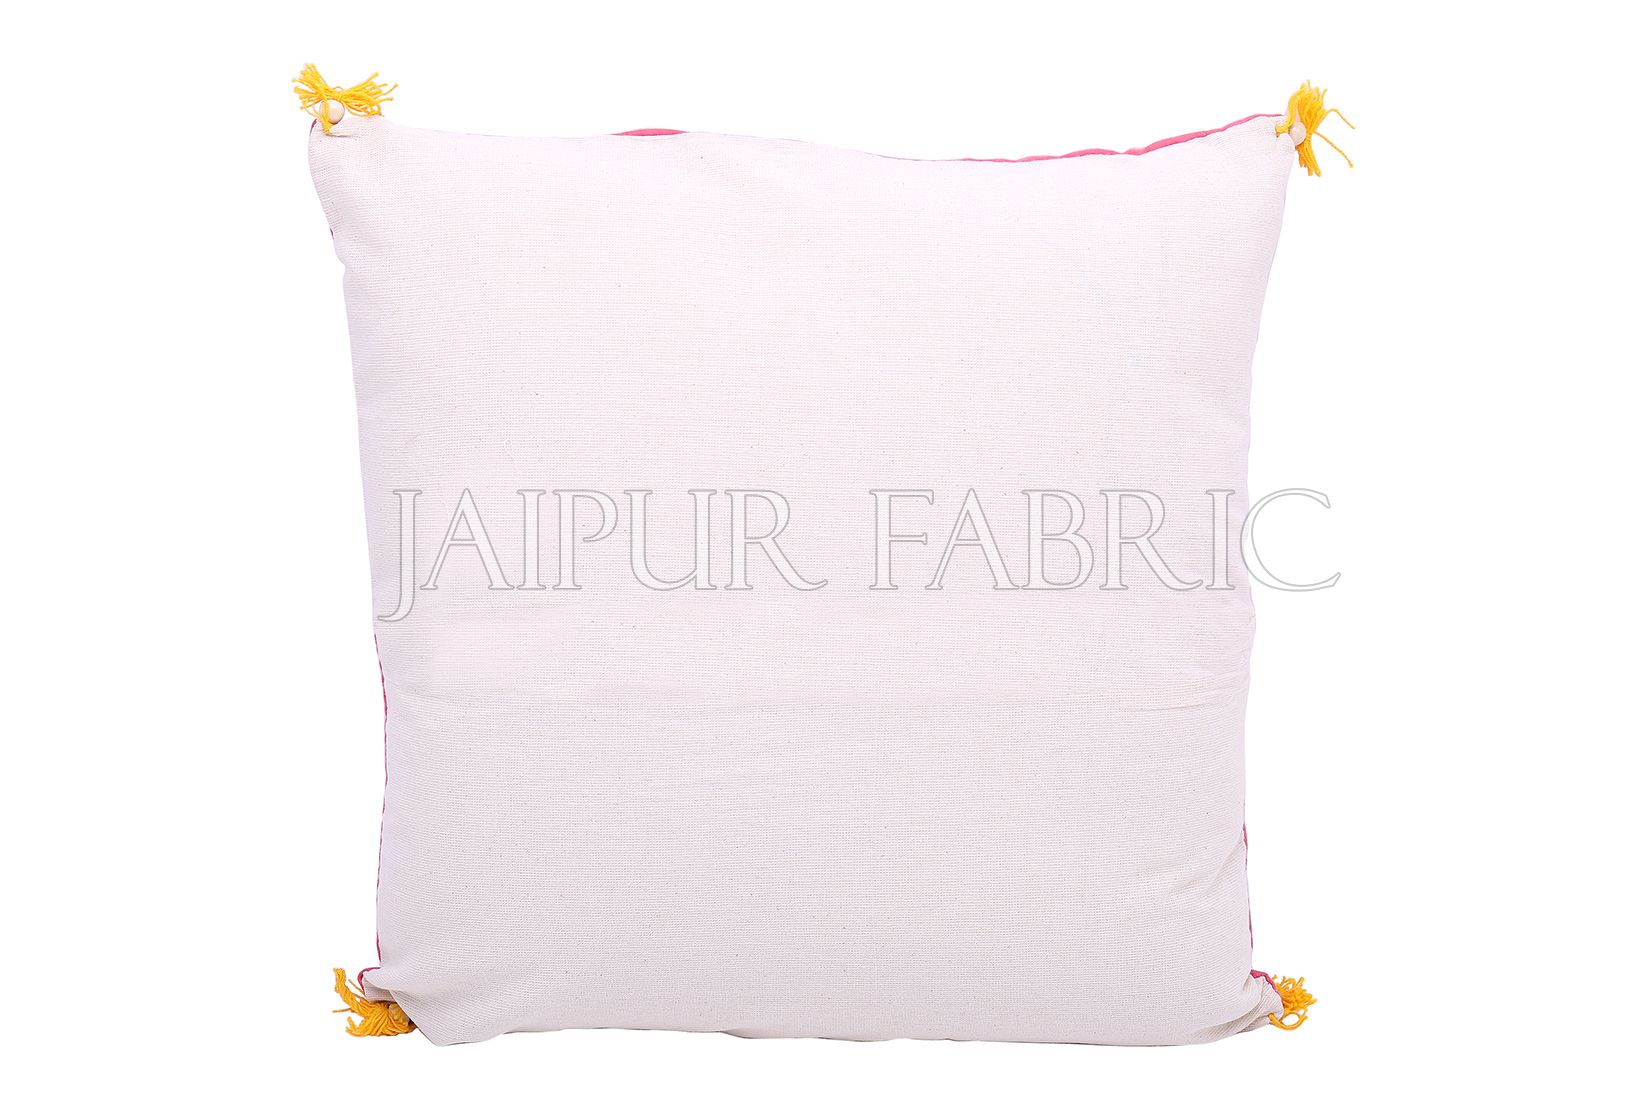 Peach Color Rangoli Print Cotton Cushion Cover